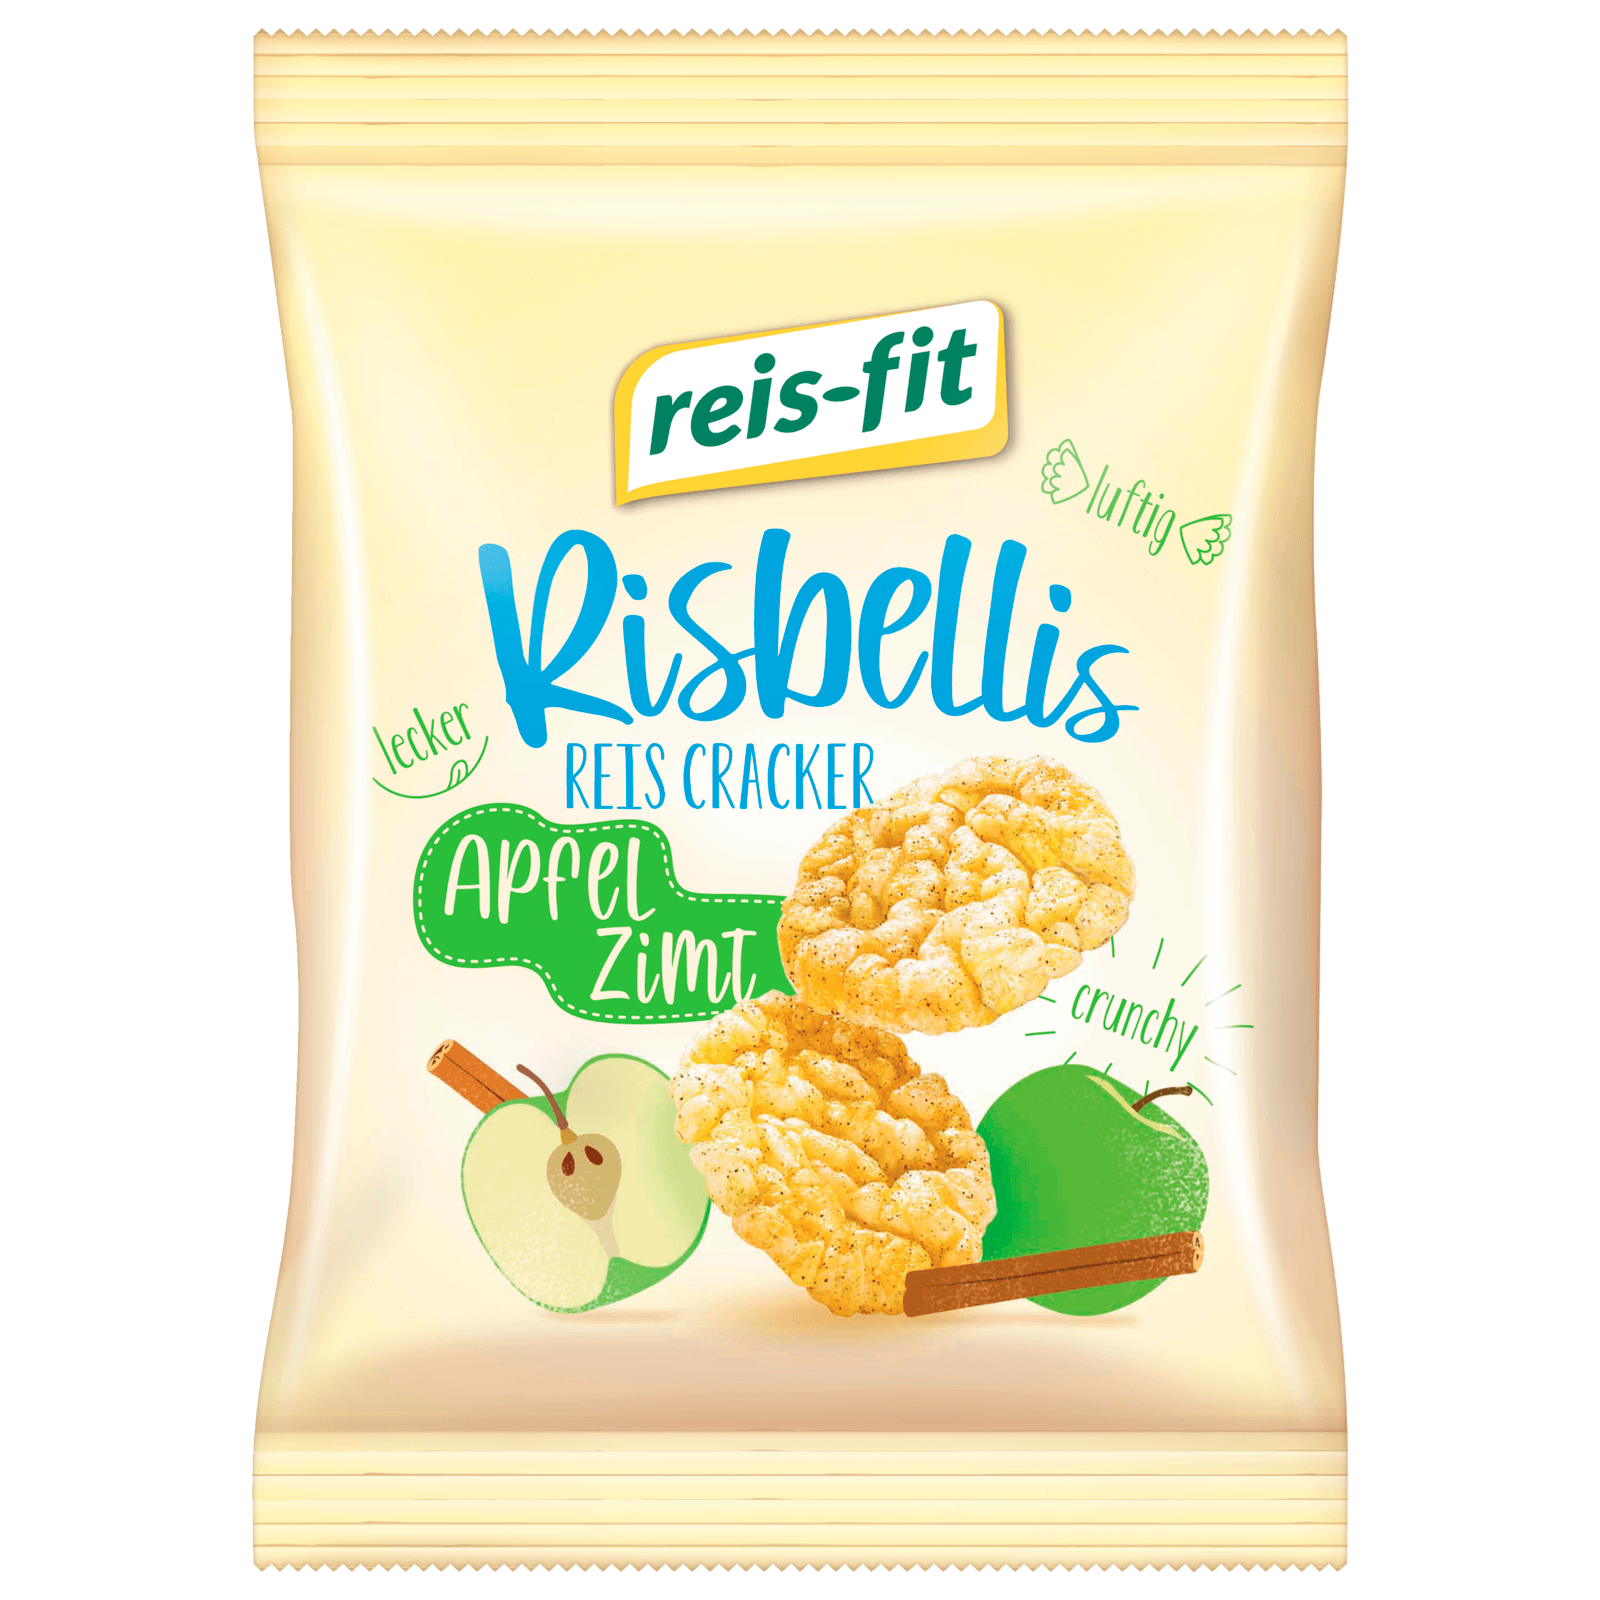 Reis-fit Risbellis Apfel & Zimt 40g bei REWE online bestellen!